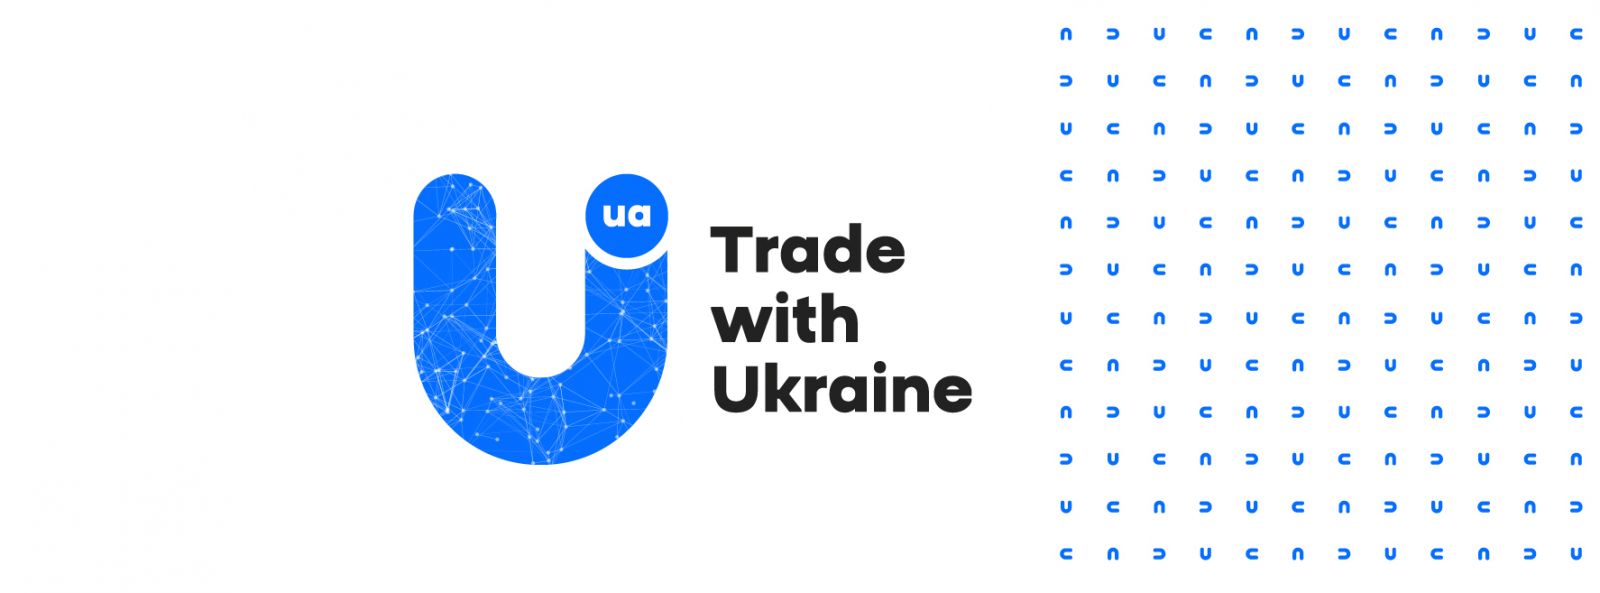 Експортний бренд України